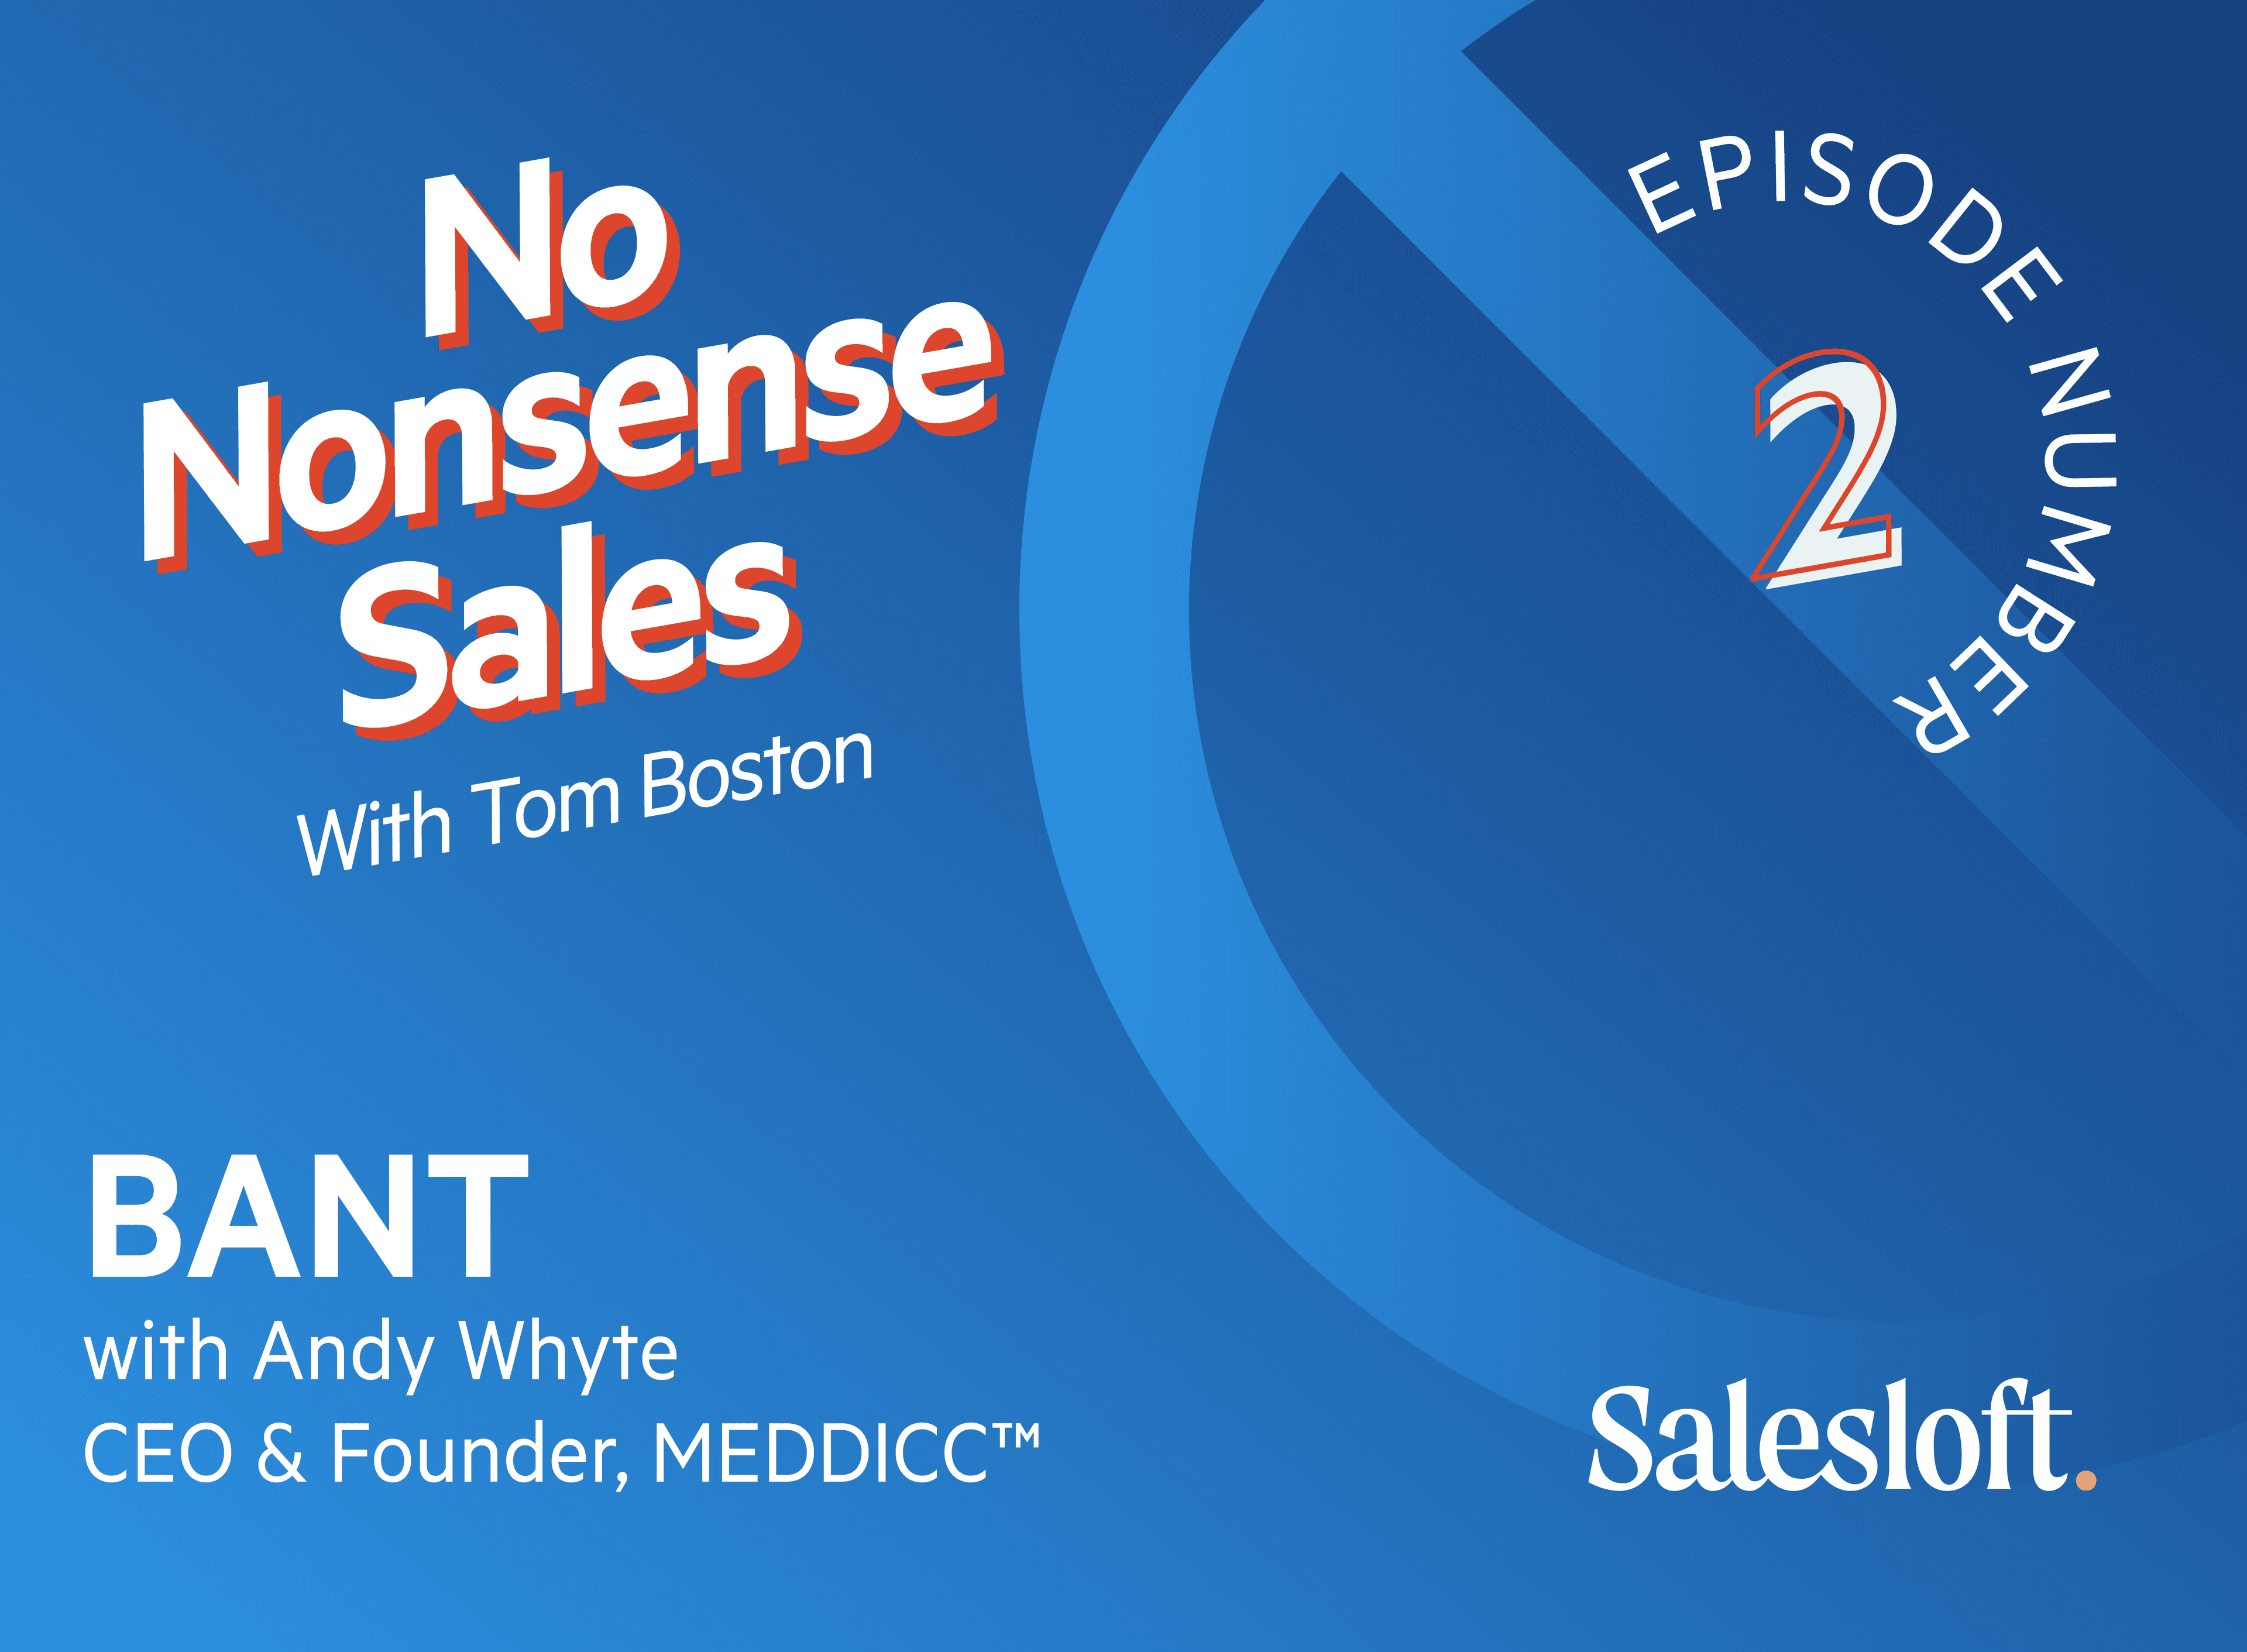 No Nonsense Sales Episode 2